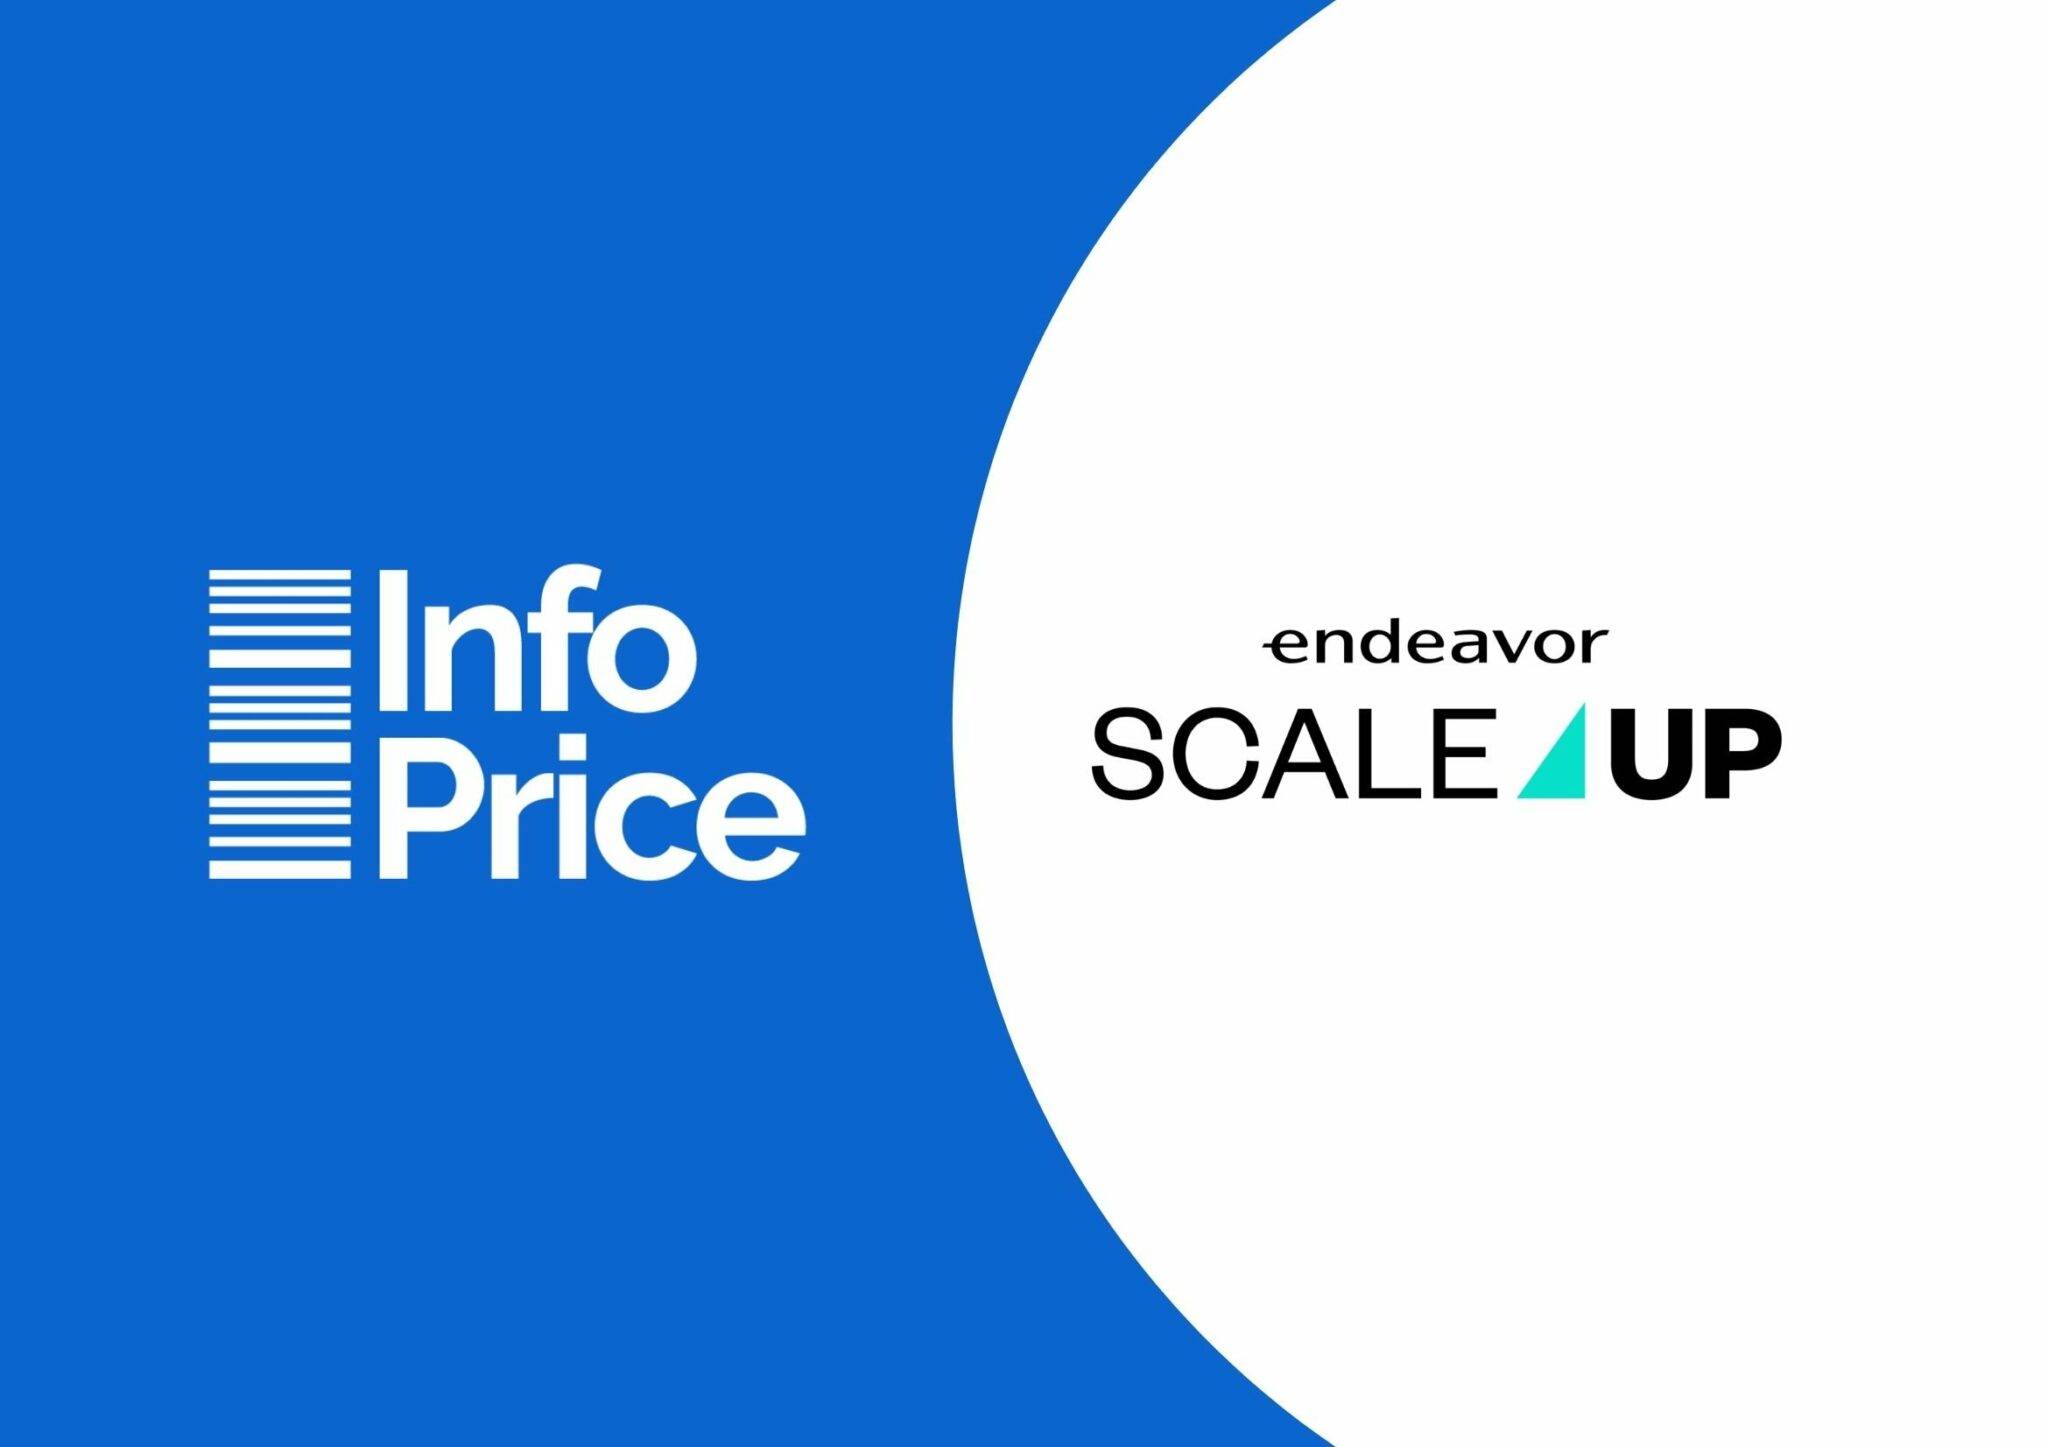 logo InfoPrice e logo Scale-Up da Endeavor